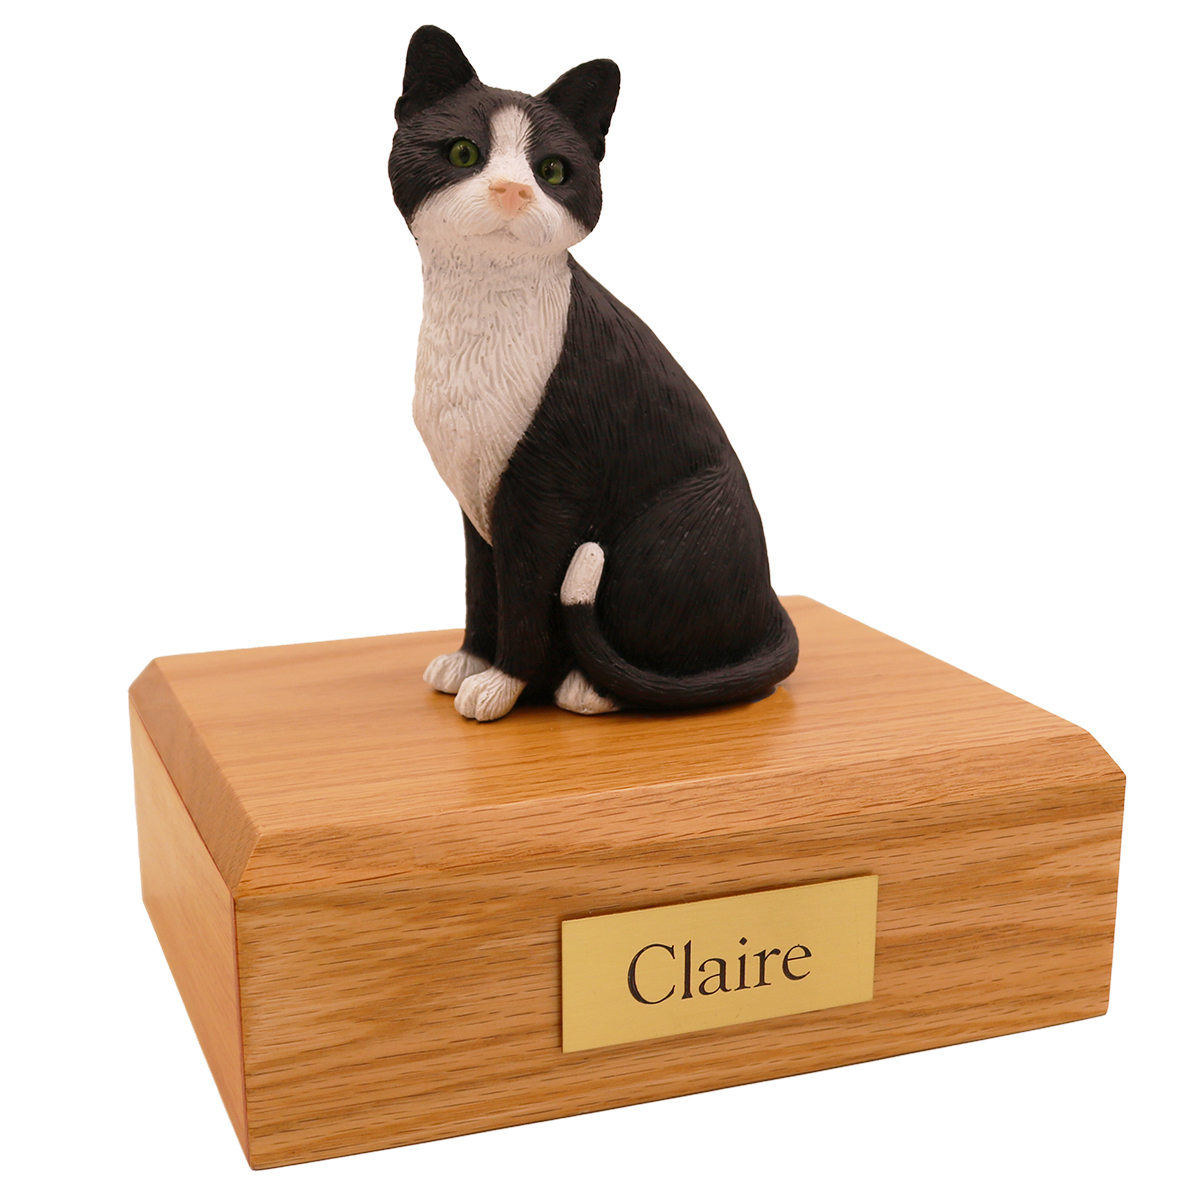 Cat, Black/White - Figurine Urn